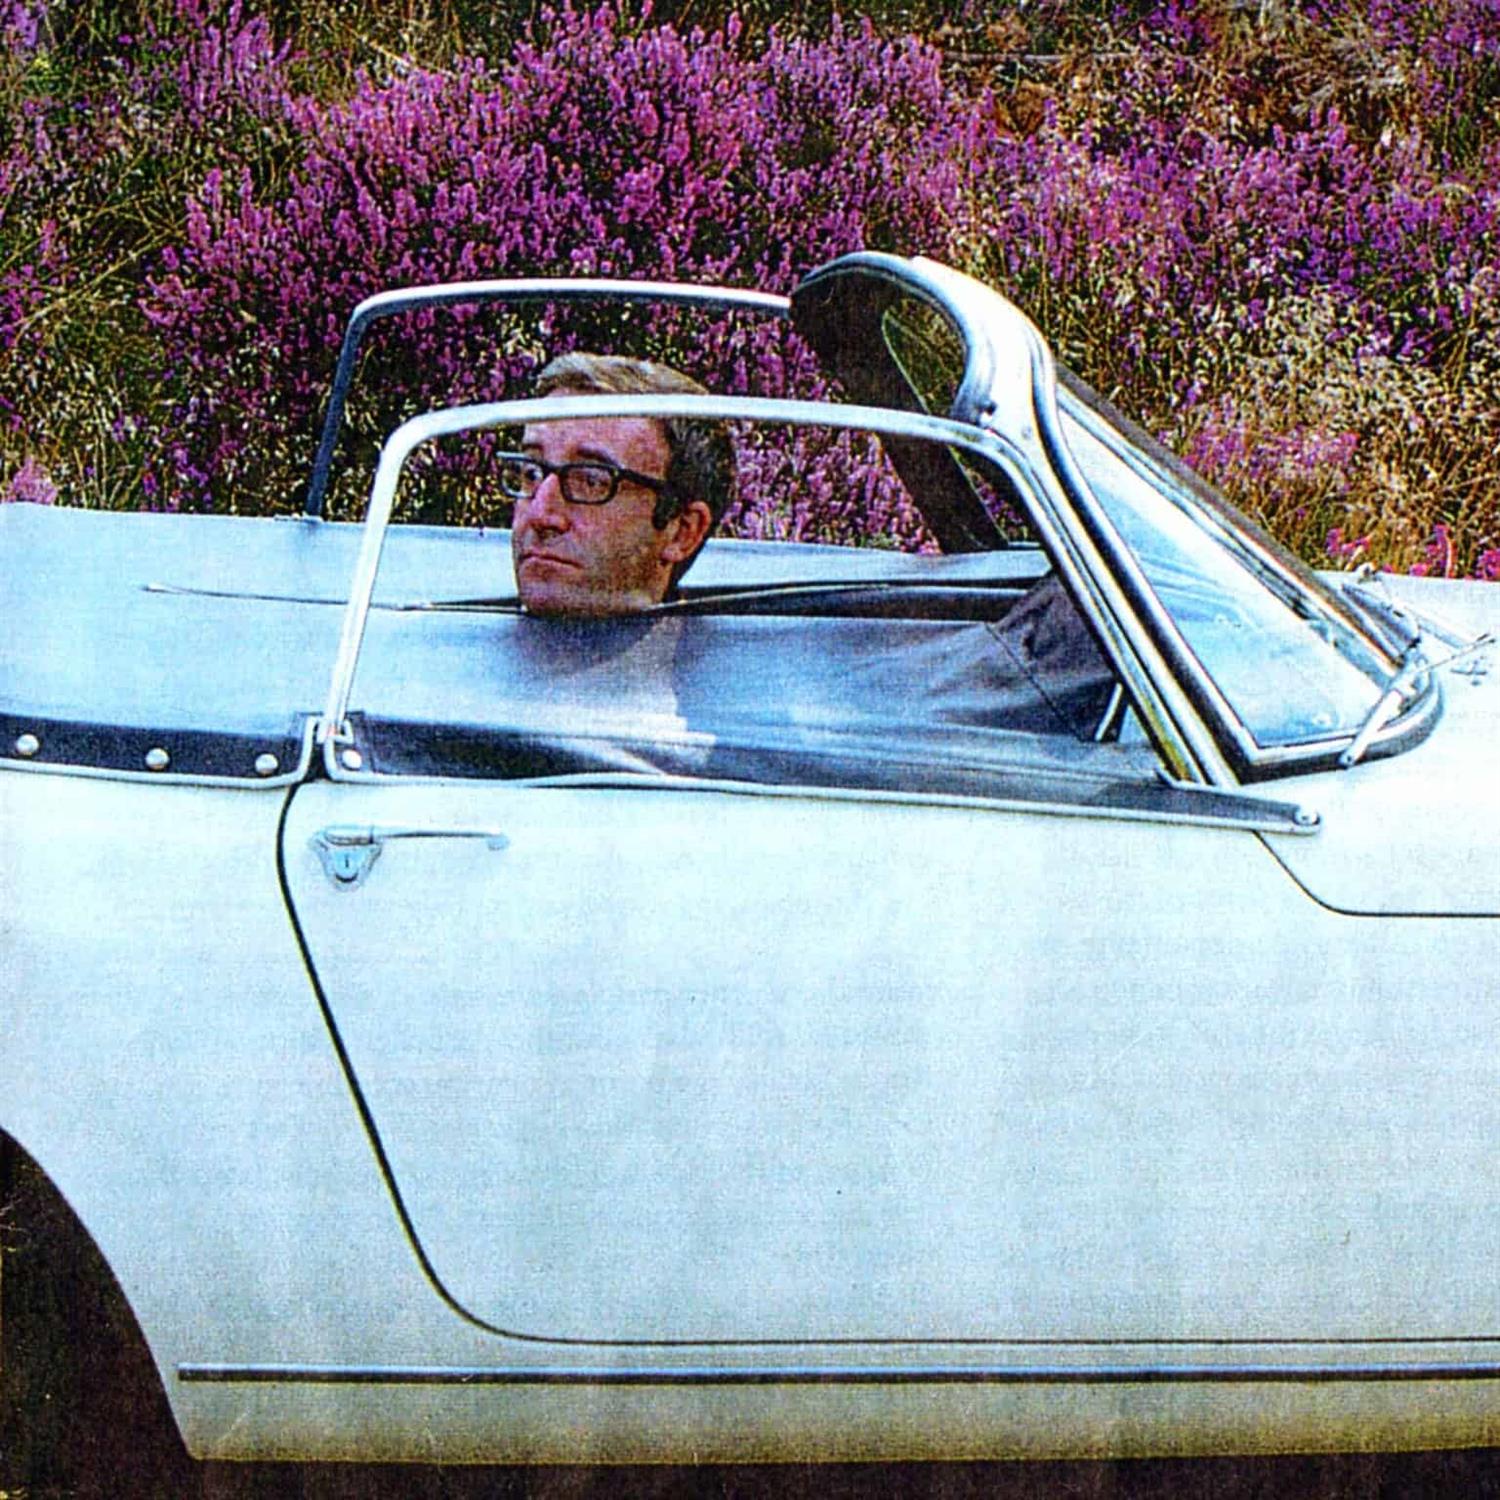 1966 Lotus Elan S3 - Ex-Peter Sellers - Image 6 of 10